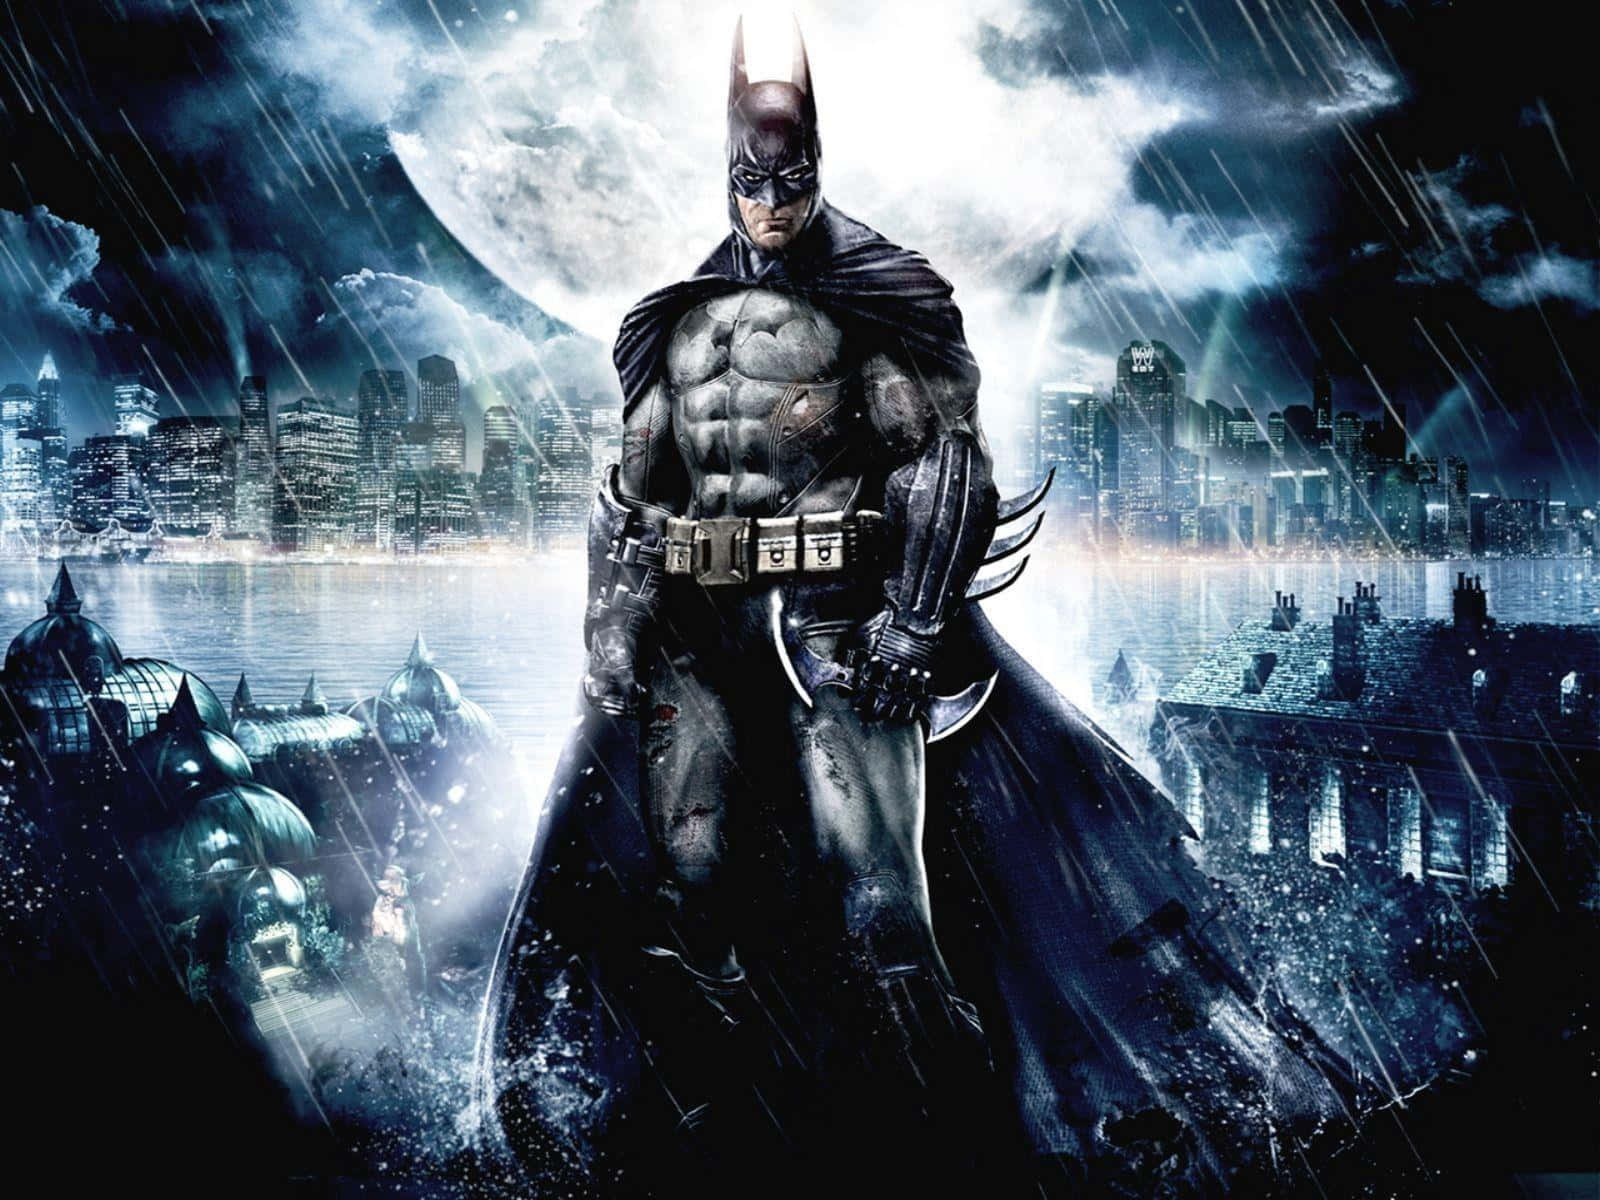 Batmanem Gotham City Sob Chuva Imagem.